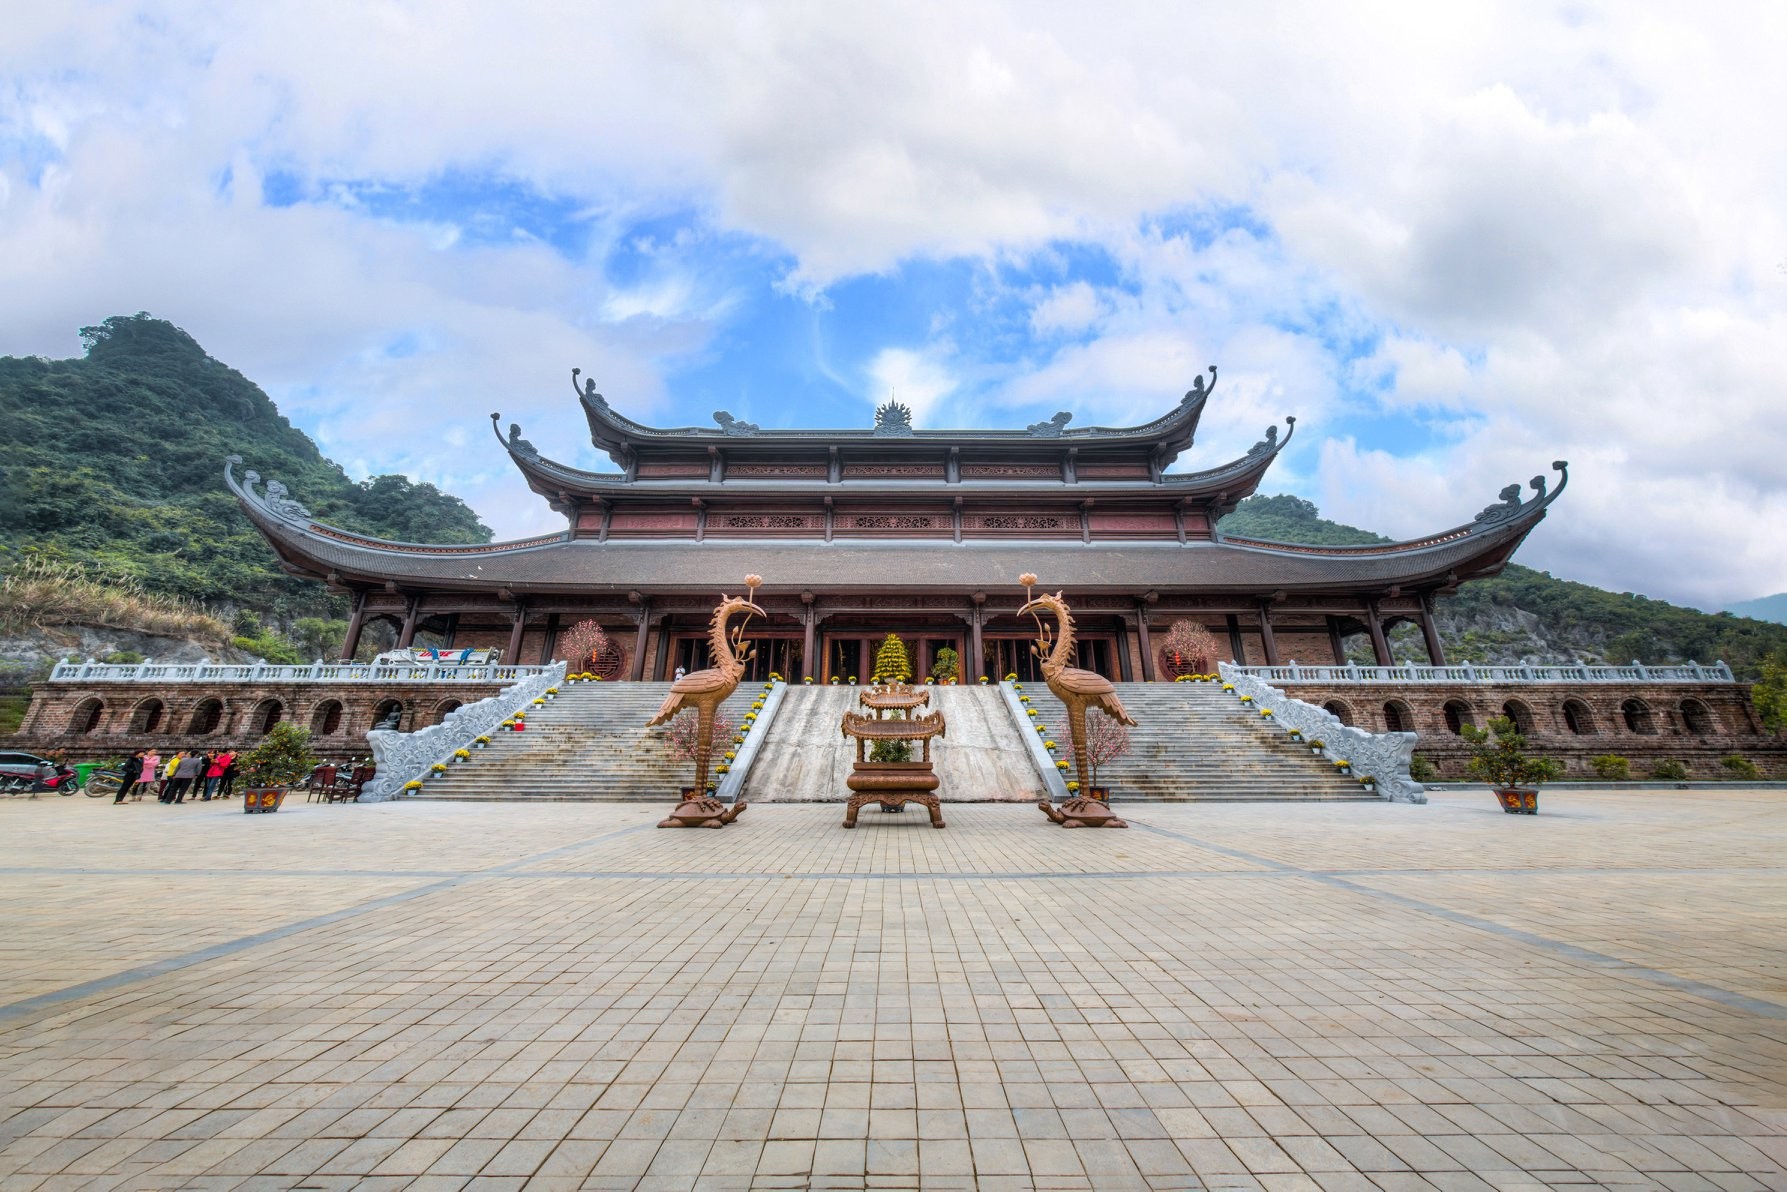 Tải hình ảnh chùa Tam Chúc cực đẹp